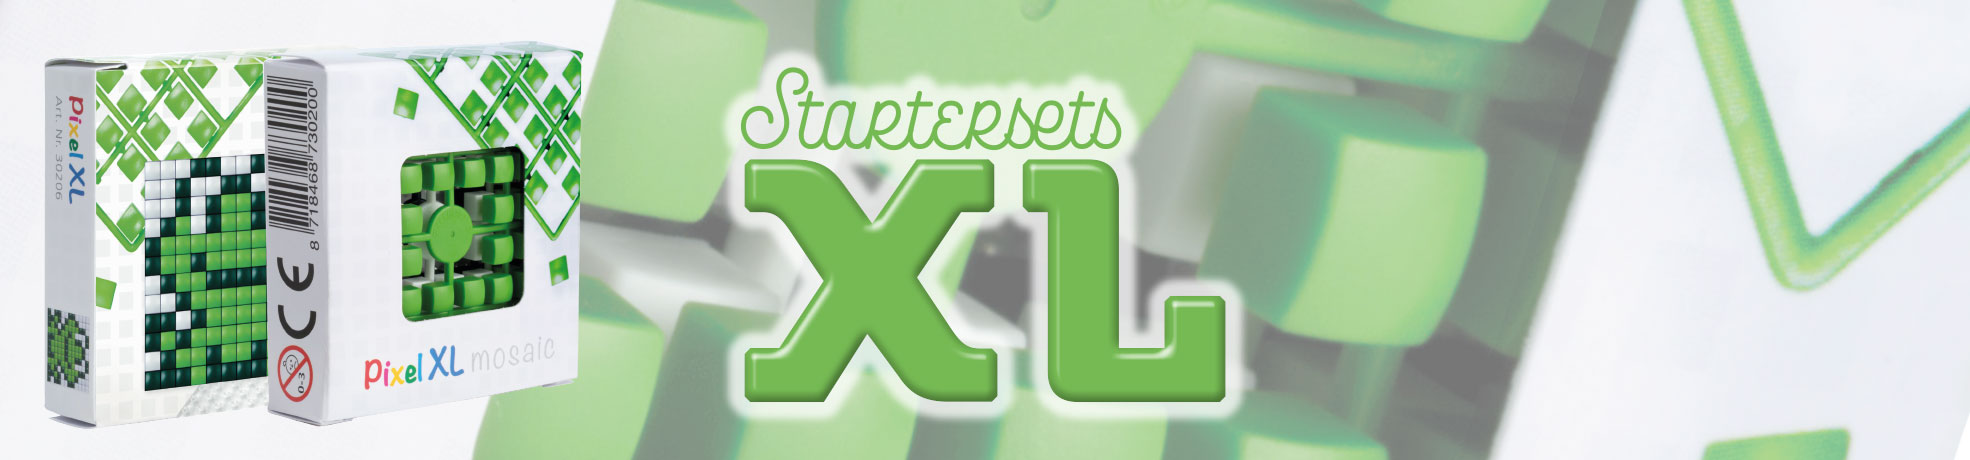 XL Startersets